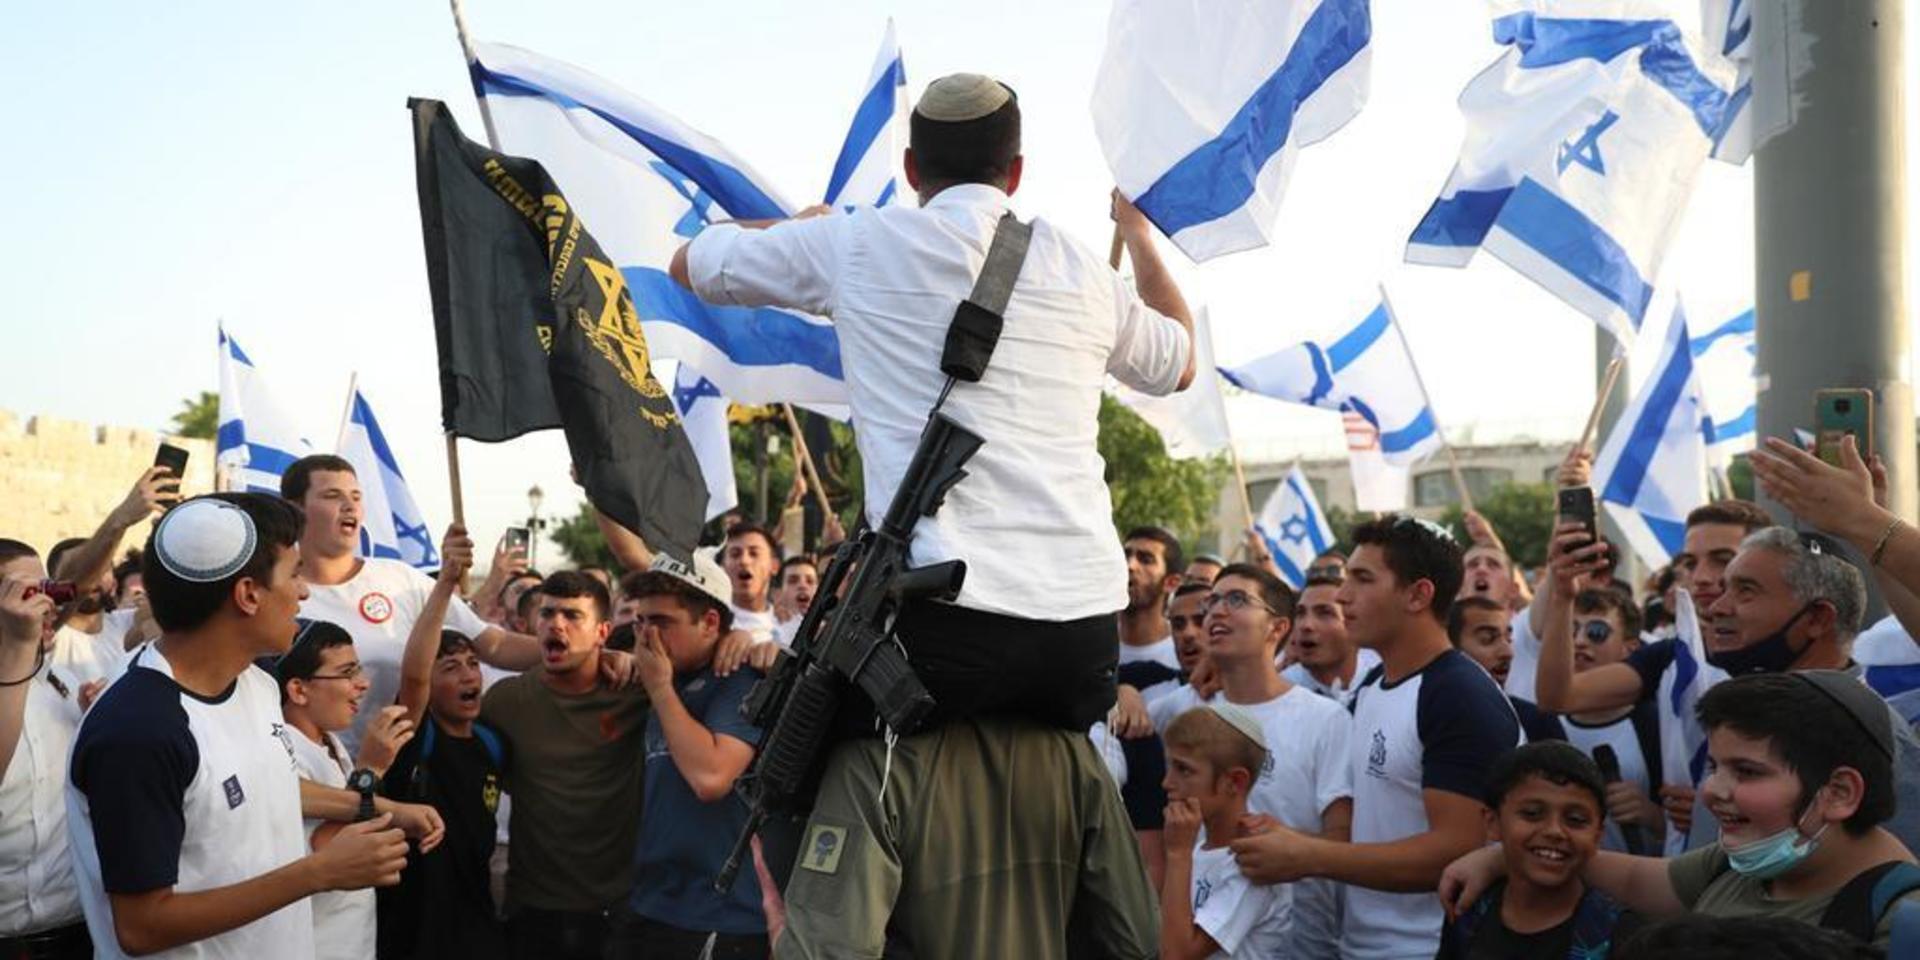 Israeliska nationalister firar Jerusalemdagen den 10 maj. Men den så kallade flaggparaden ställdes in på grund av det spända läget. Efter det har den skjutits upp en gång till – men nu har den fått grönt ljus av israeliska myndigheter.